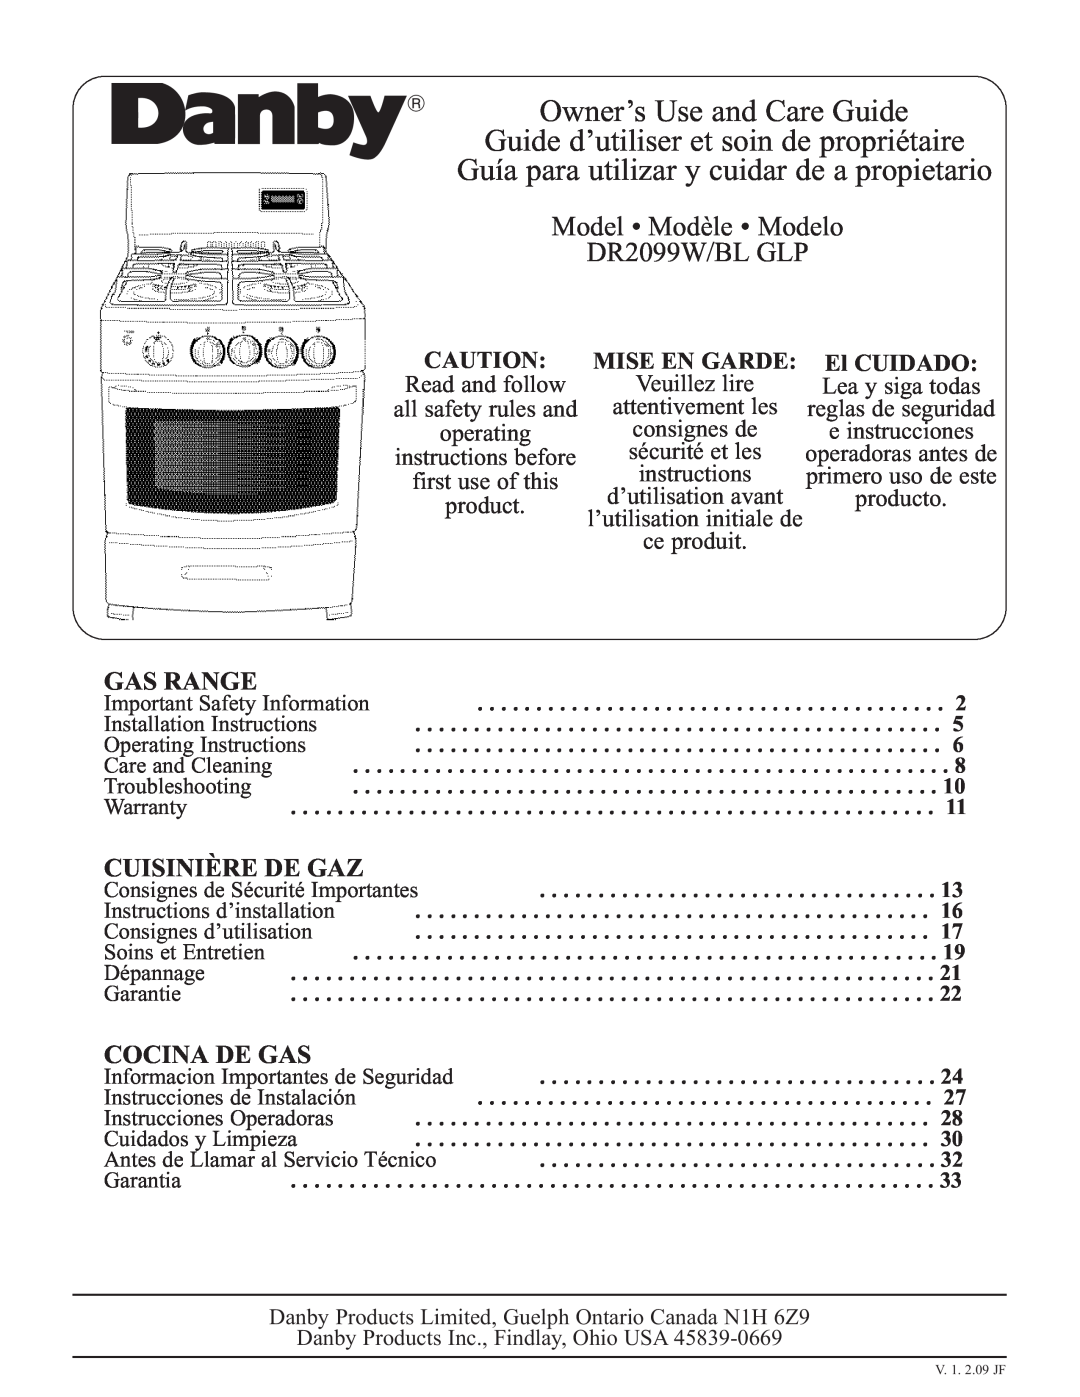 Danby DR2099WGLP installation instructions Gas Range, Cuisinière De Gaz, Cocina De Gas, Mise En Garde, El CUIDADO 